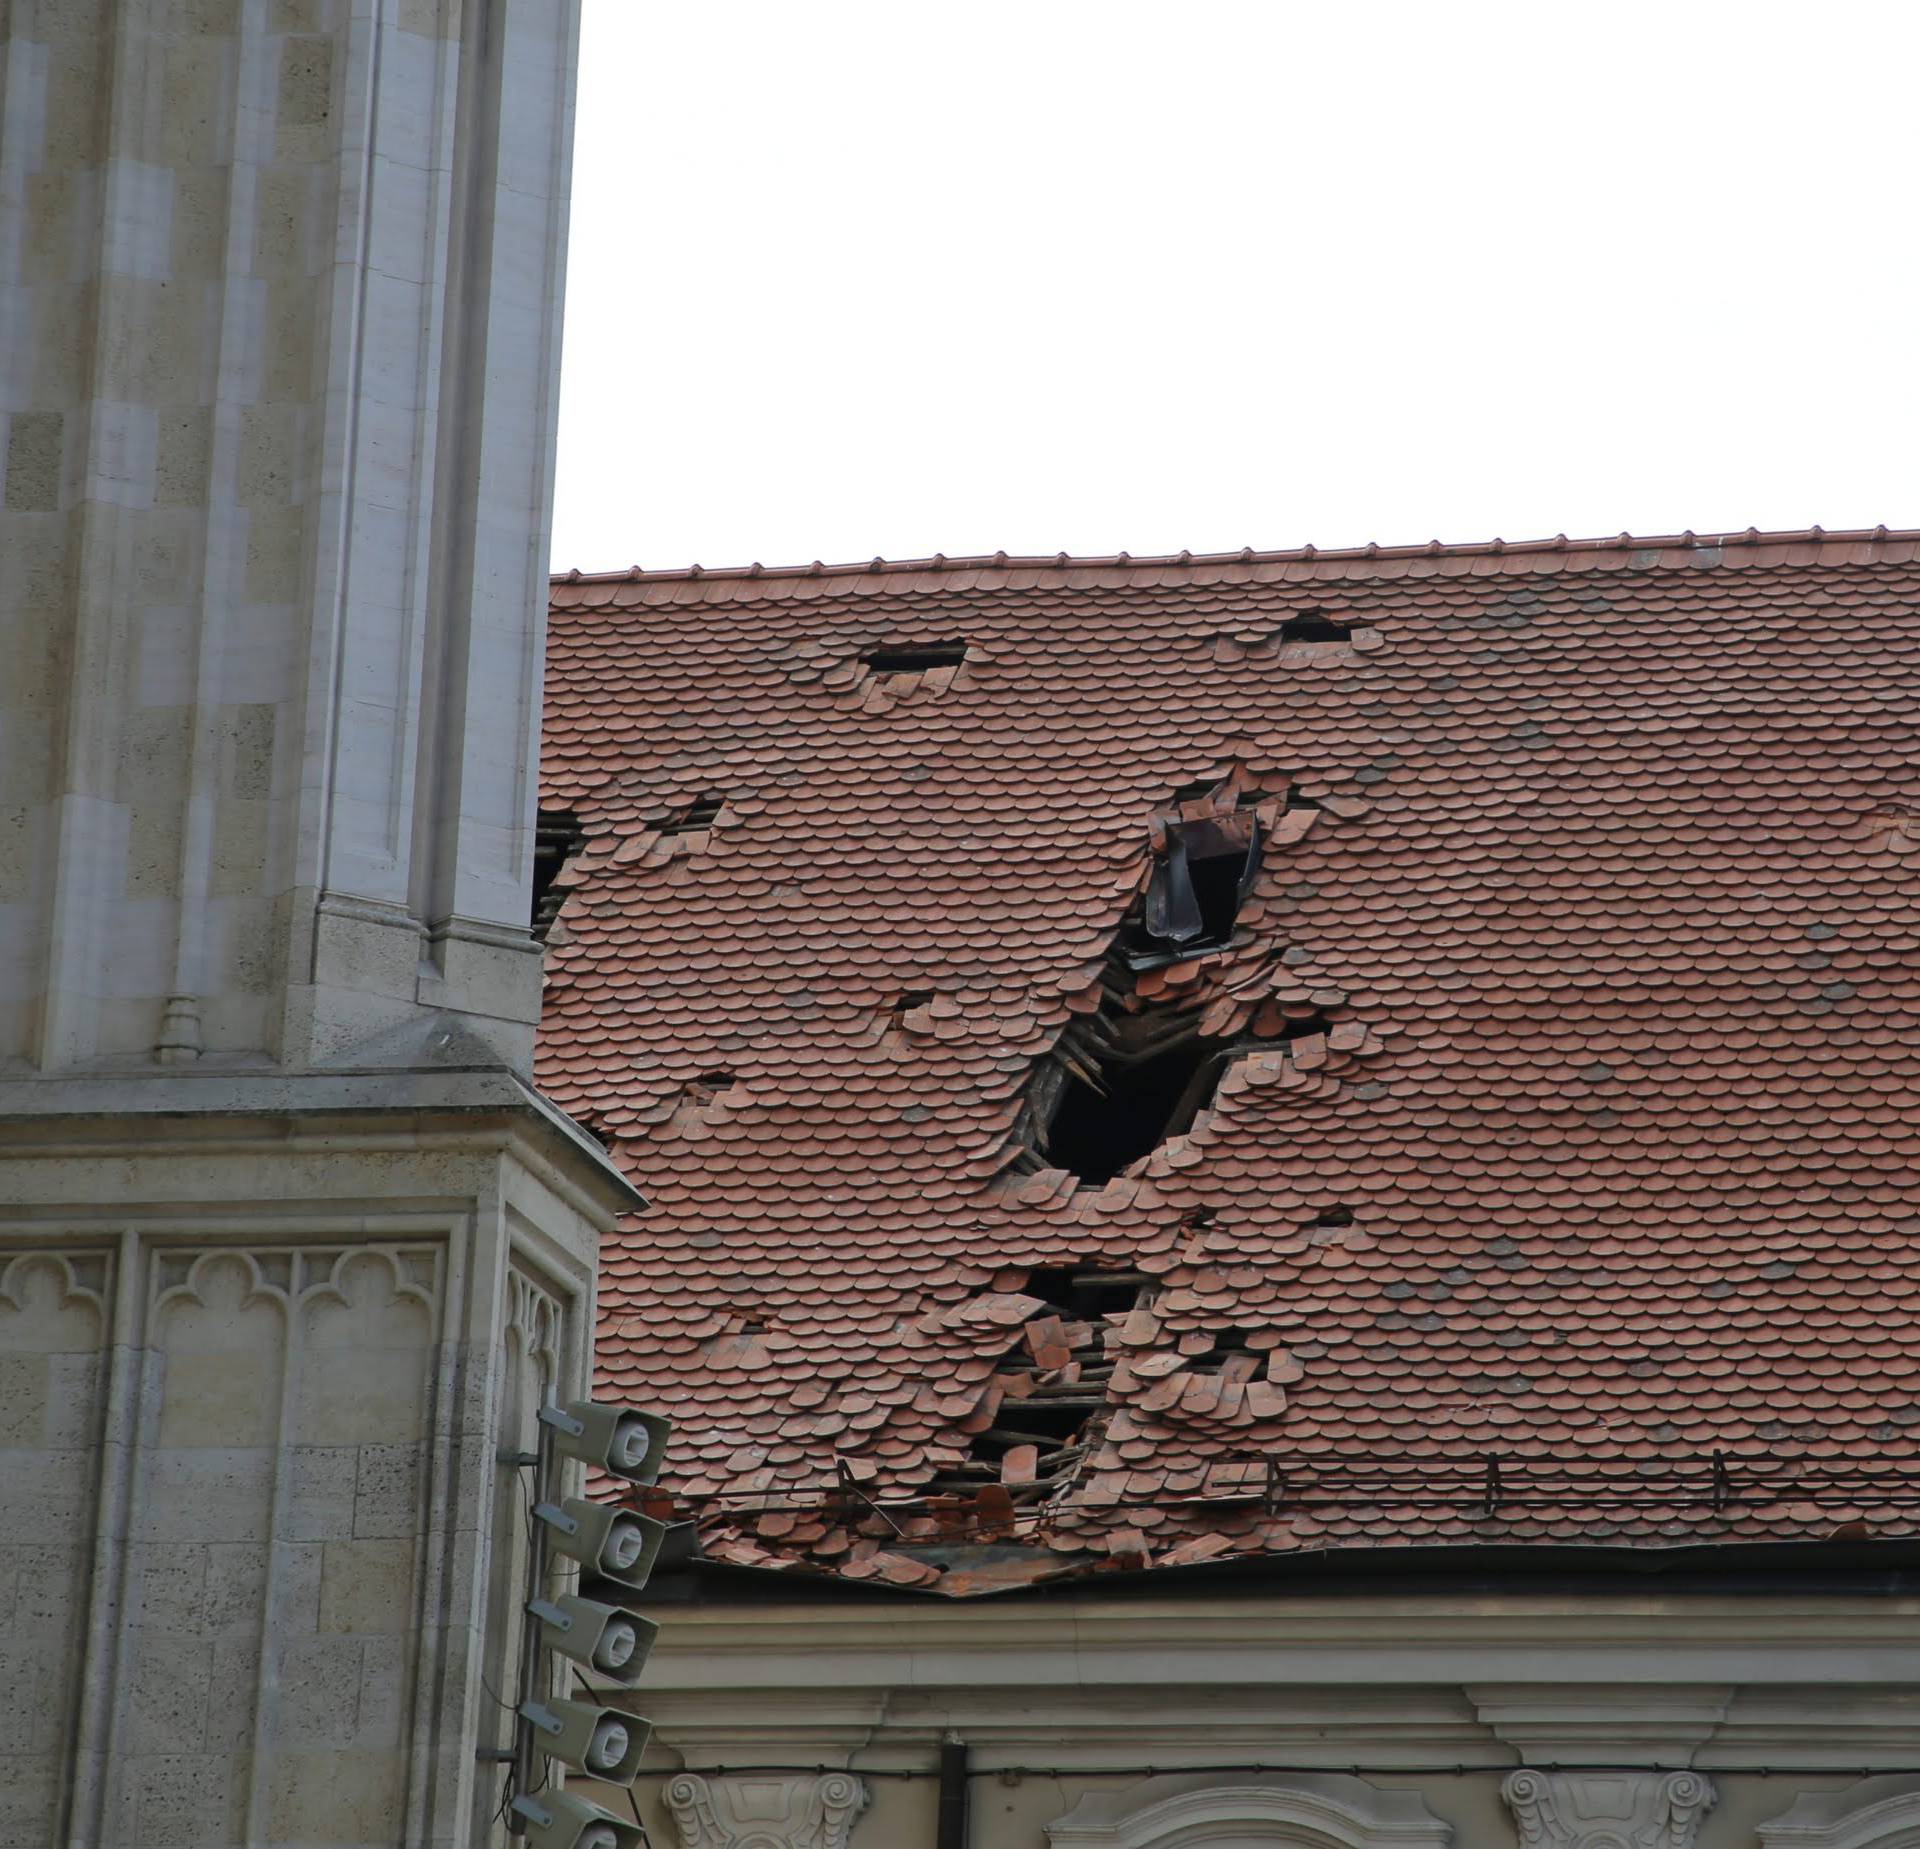 Biskupija objavila fotografije uništenja katedrale i dvora